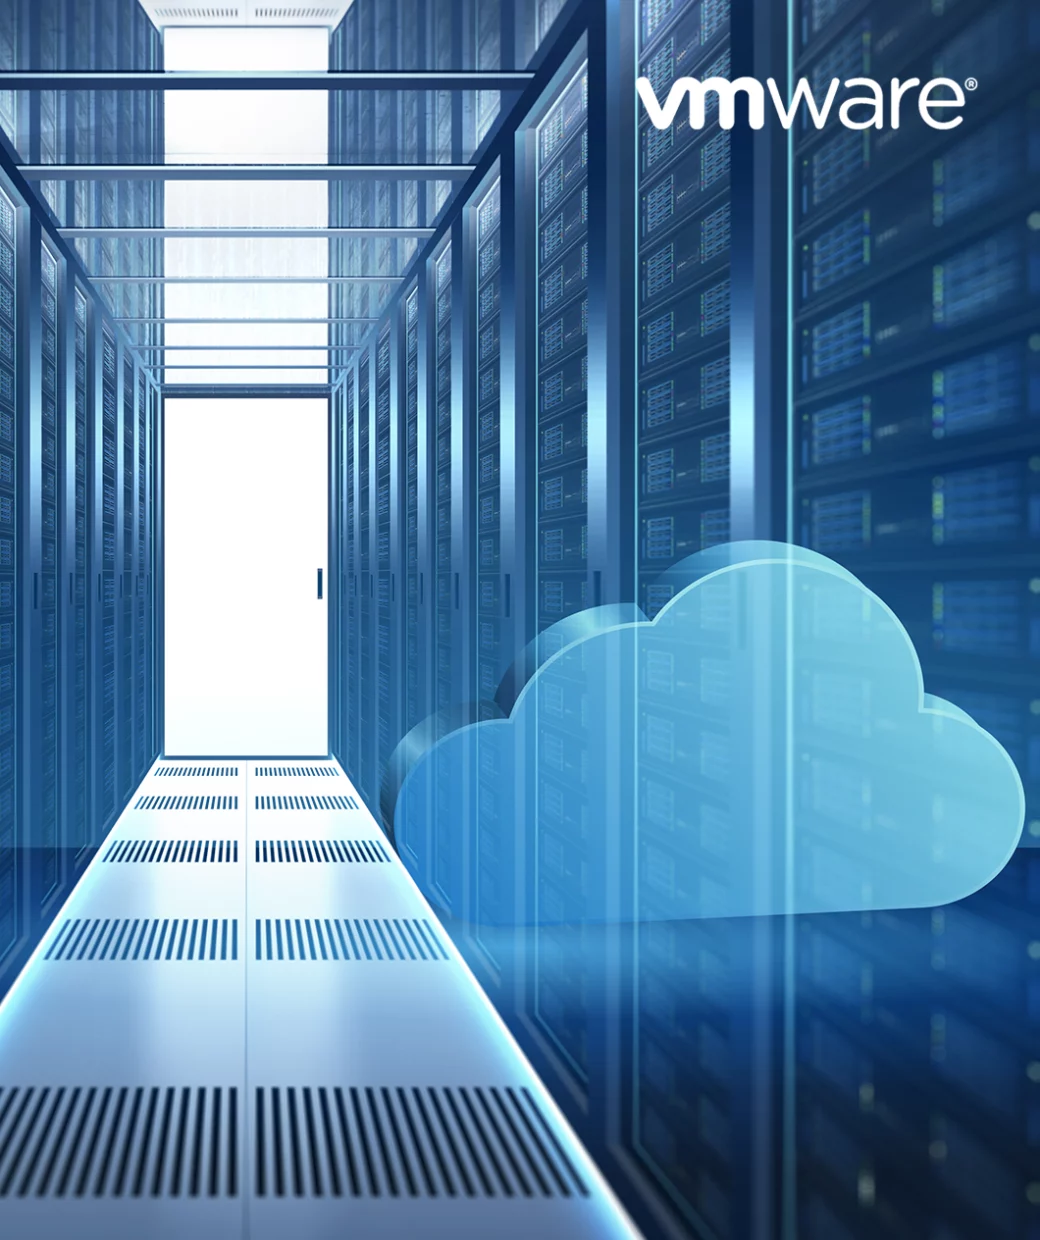 Servidores con soluciones de virtualización gracias a las licencias y productos de VMware distribuidos por especialistas como icorp, partner oficial de VMware en México.